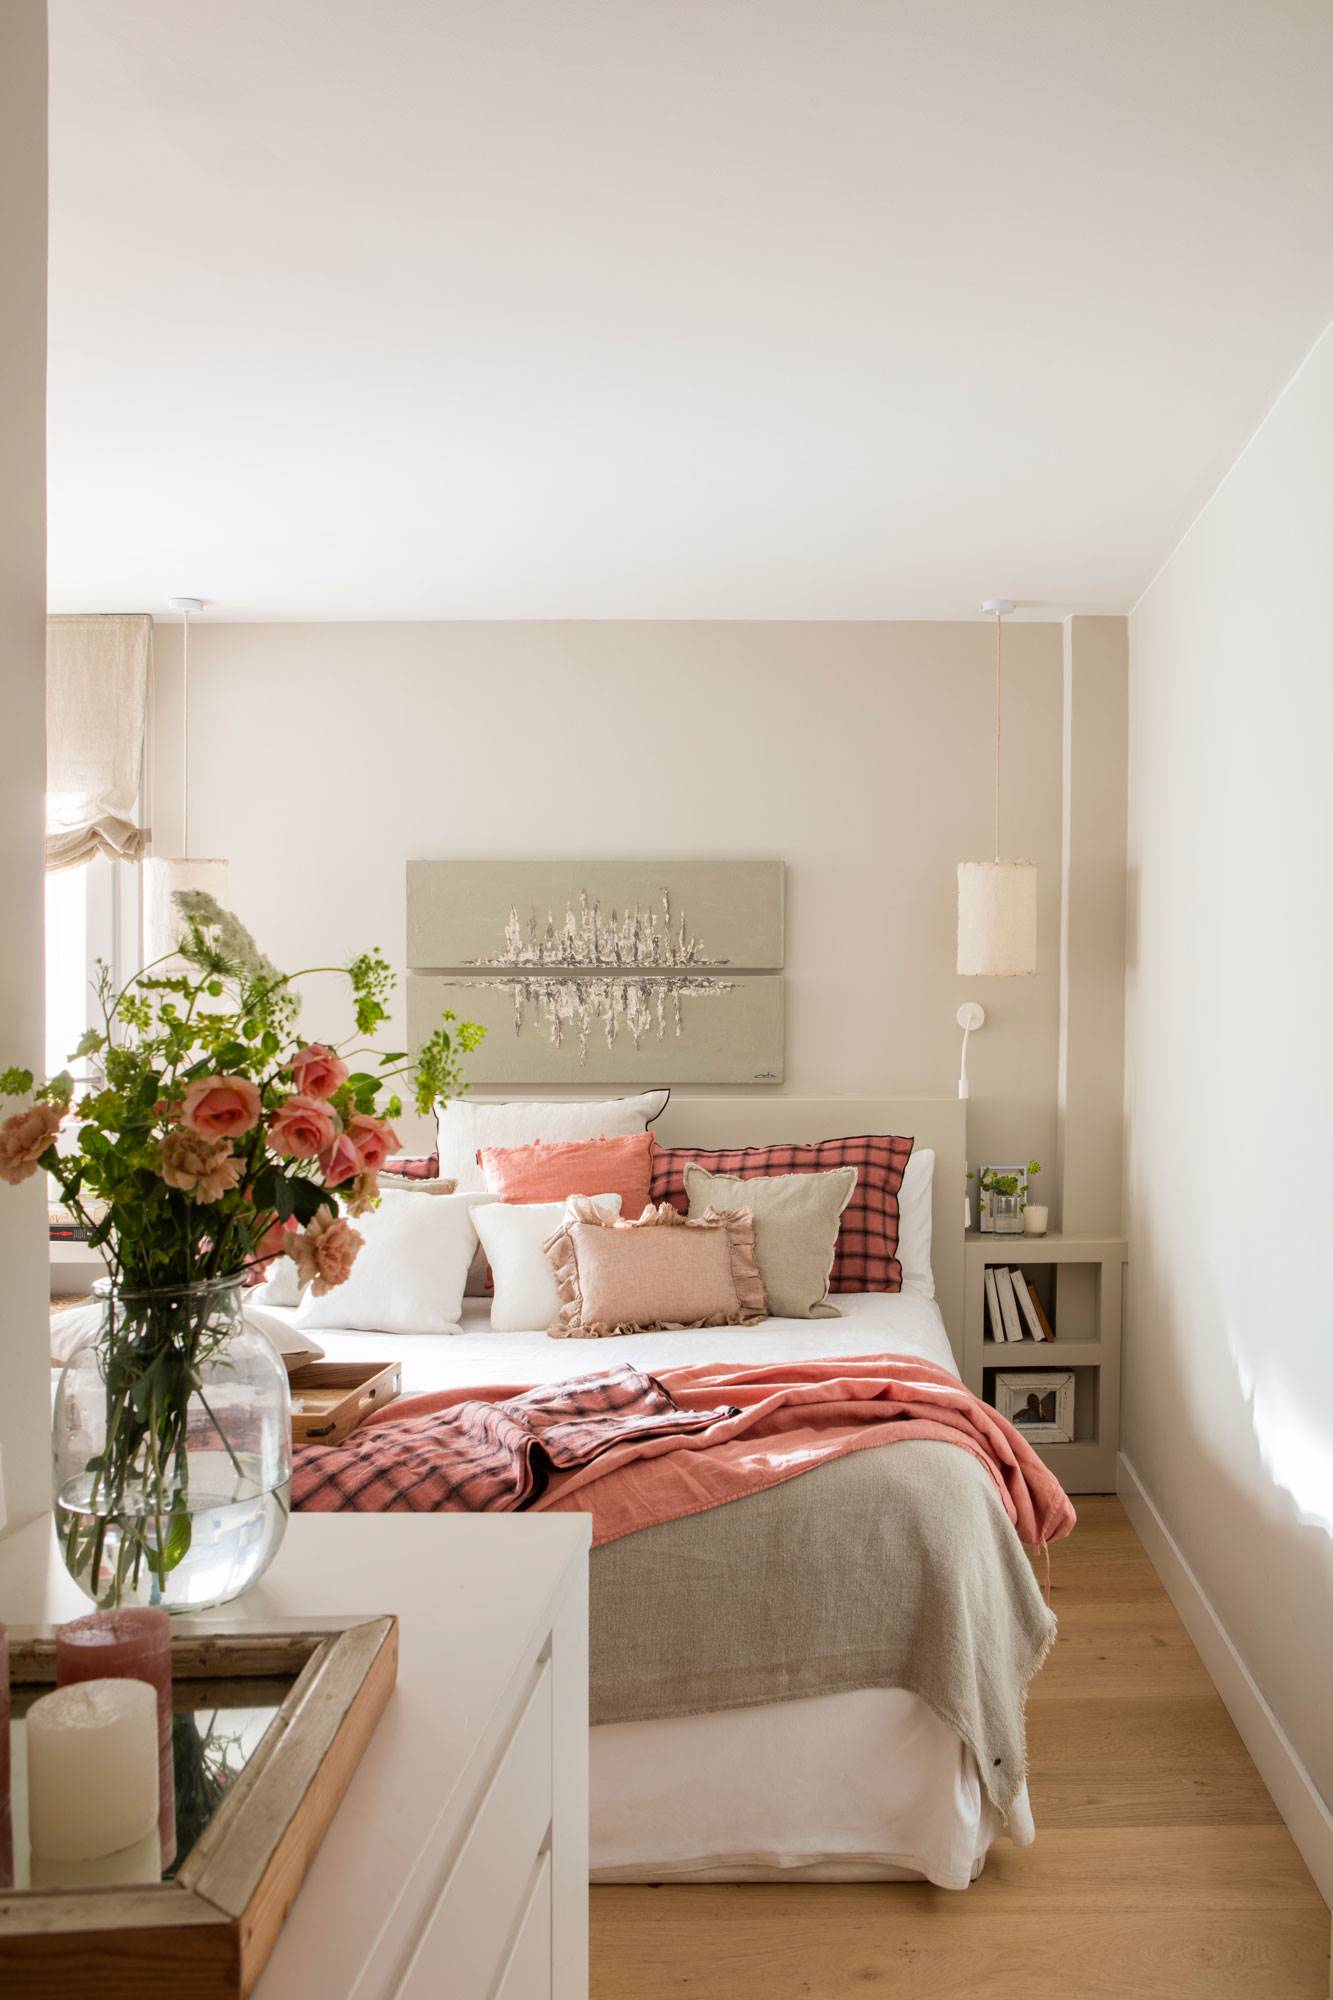 Dormitorio pintado de colores suaves con plaid y cojines a juego. 